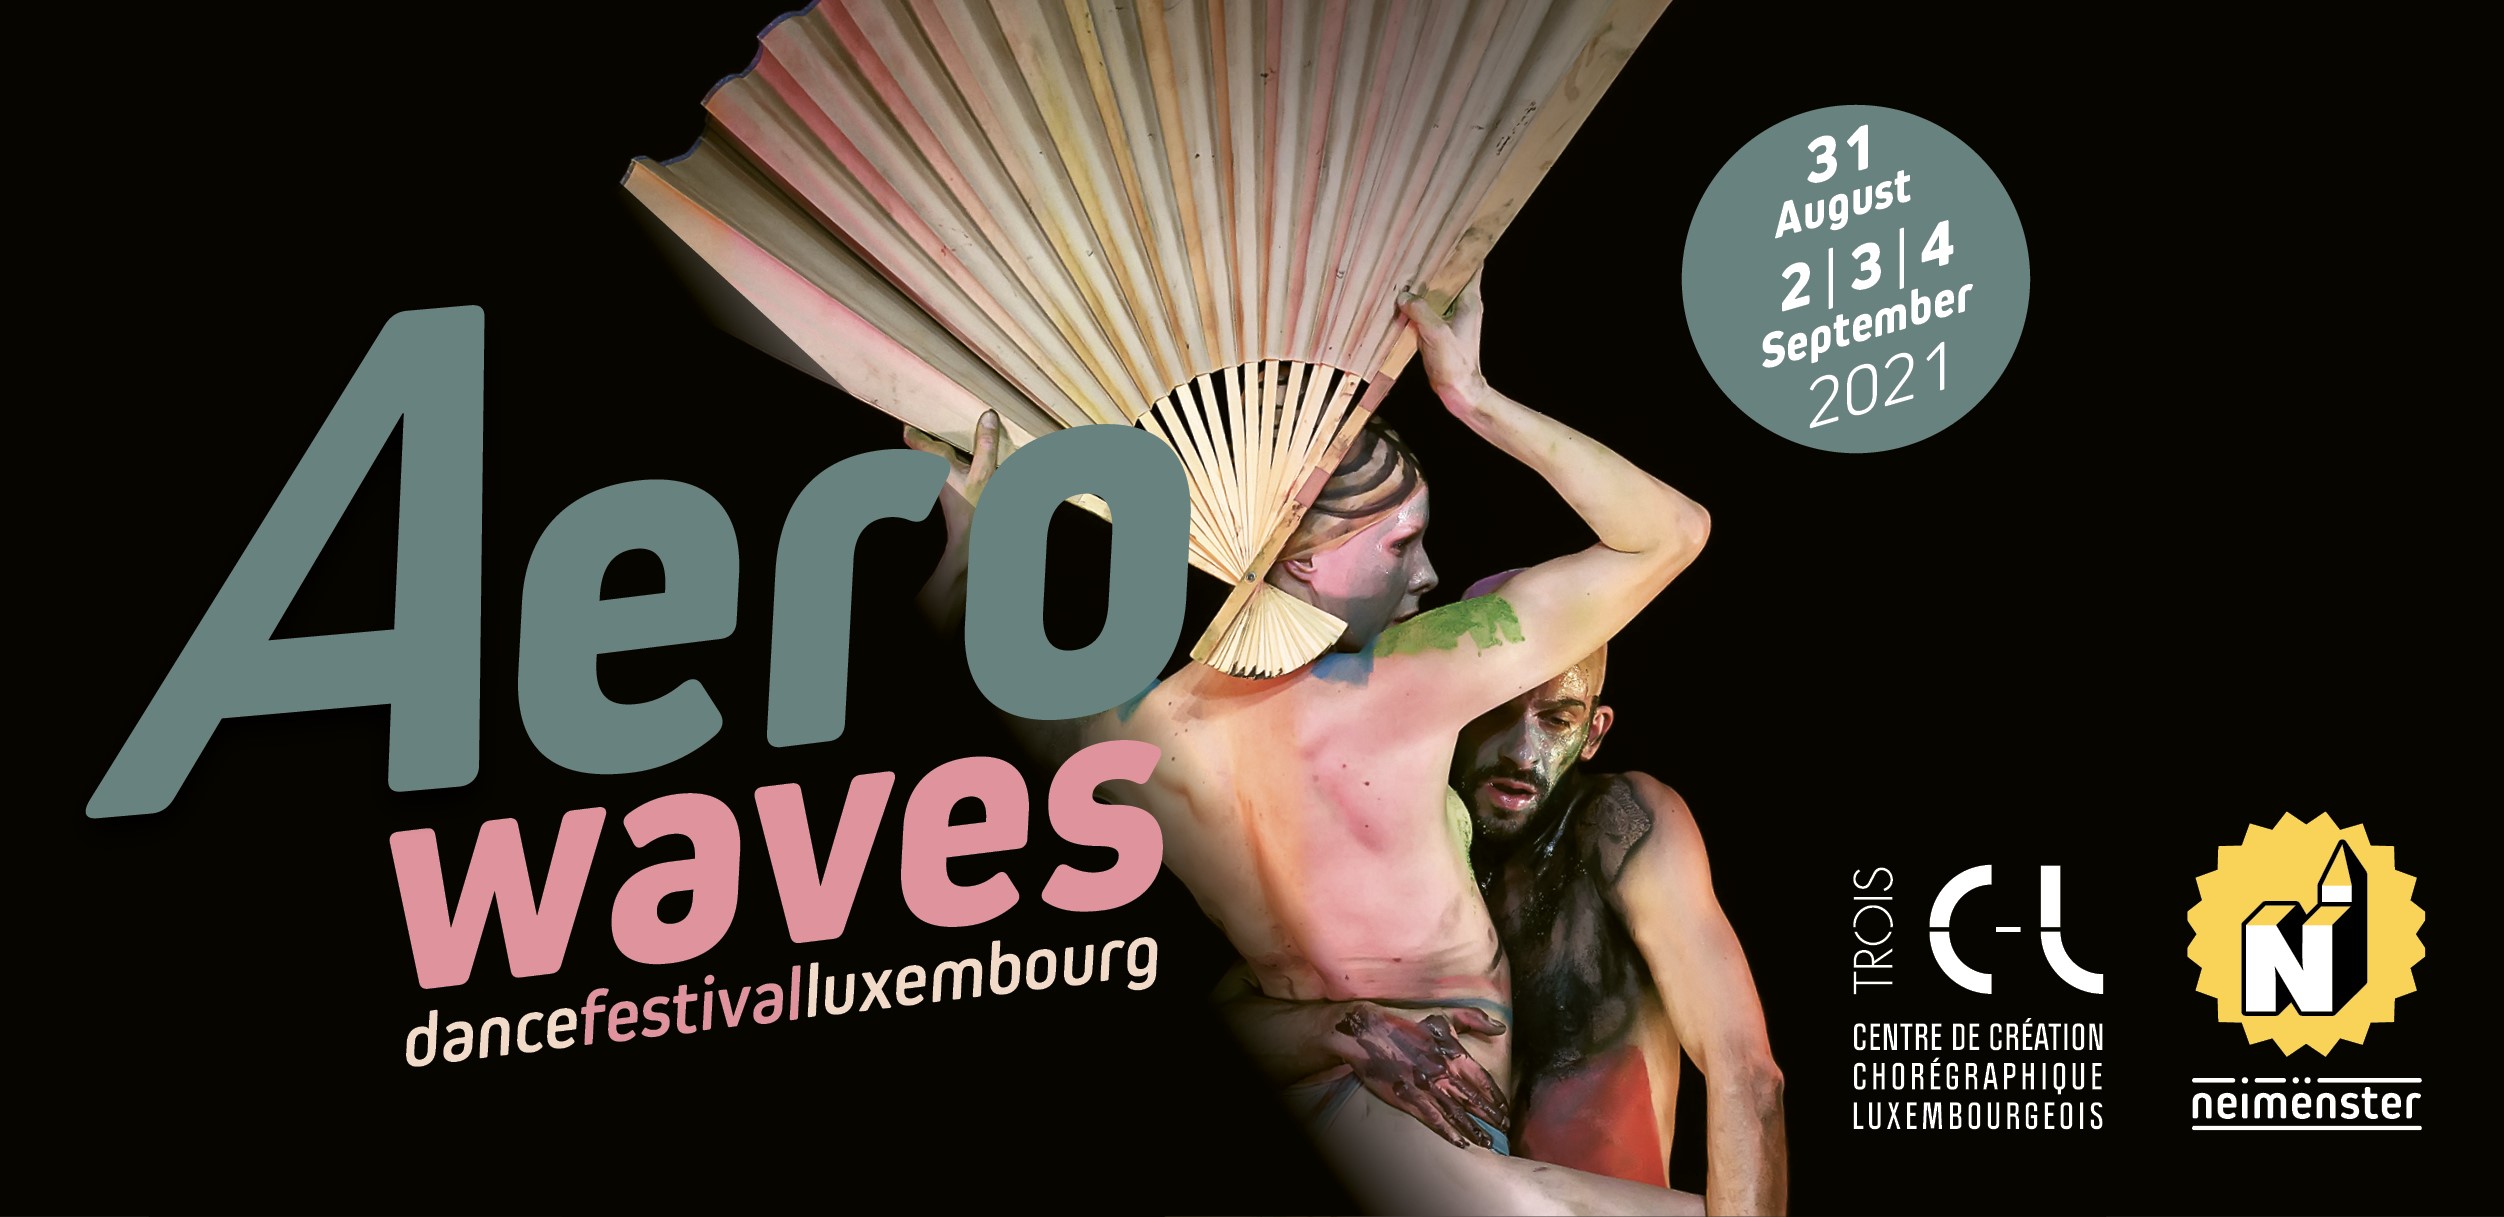 Aerowaves Dance Festival Luxembourg, un bilan positif pour la scène luxembourgeoise.